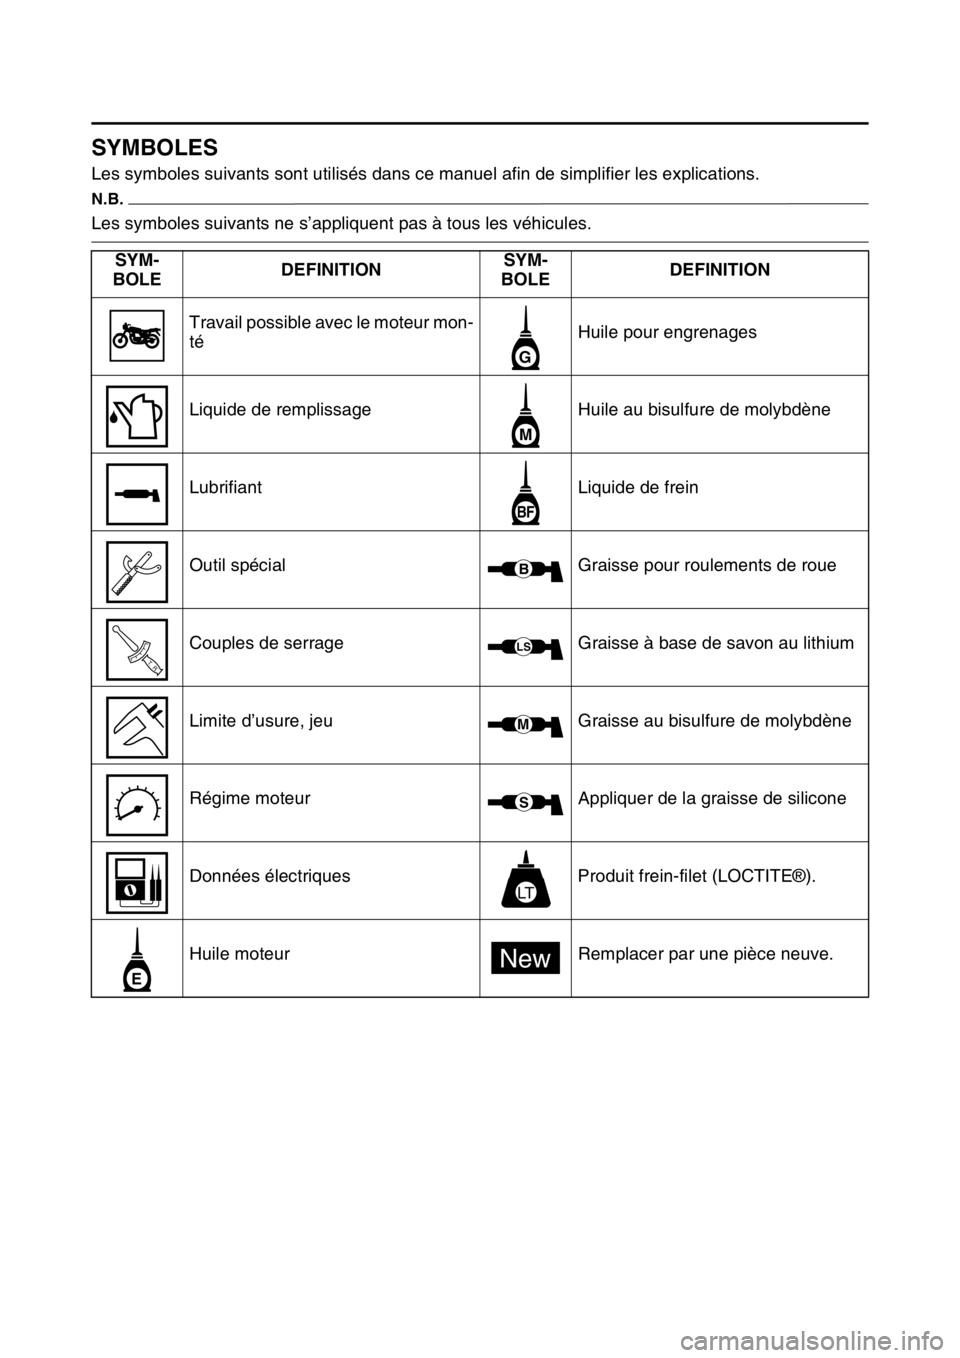 YAMAHA YZ250F 2014  Notices Demploi (in French) FAS1SM1007
SYMBOLES
Les symboles suivants sont utilisés dans ce manuel afin de simplifier les explications.
N.B.
Les symboles suivants ne s’appliquent pas à tous les véhicules.
SYM-
BOLEDEFINITIO